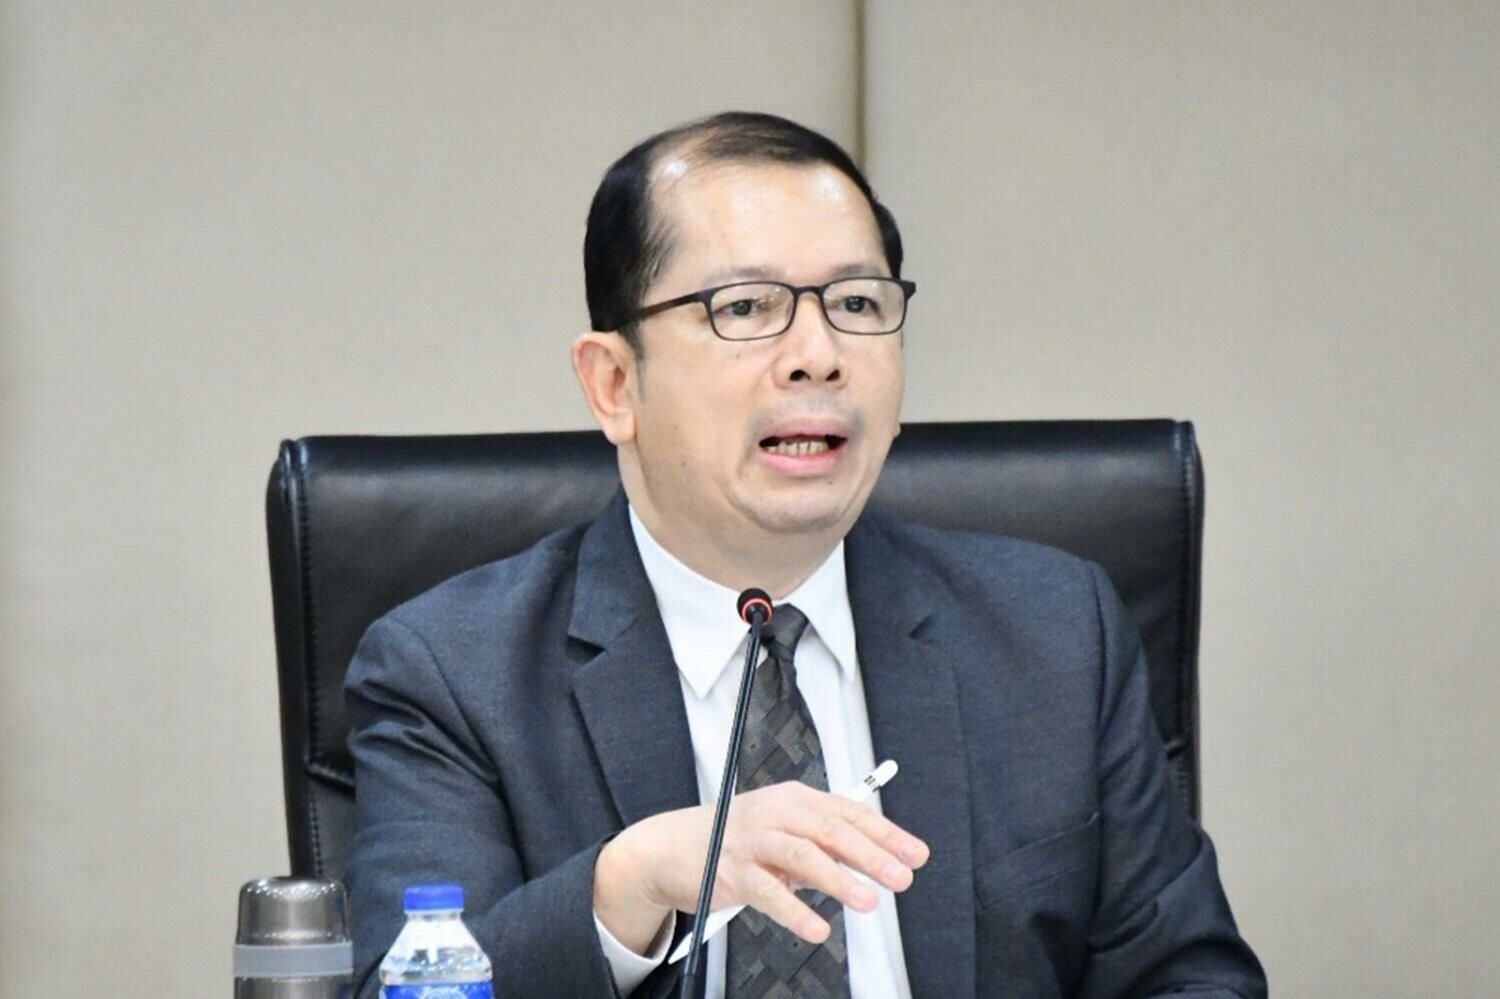 泰国政府与BRN将在马来西亚开始和平谈判 – 泰国新闻 – 泰国新闻、旅游与论坛